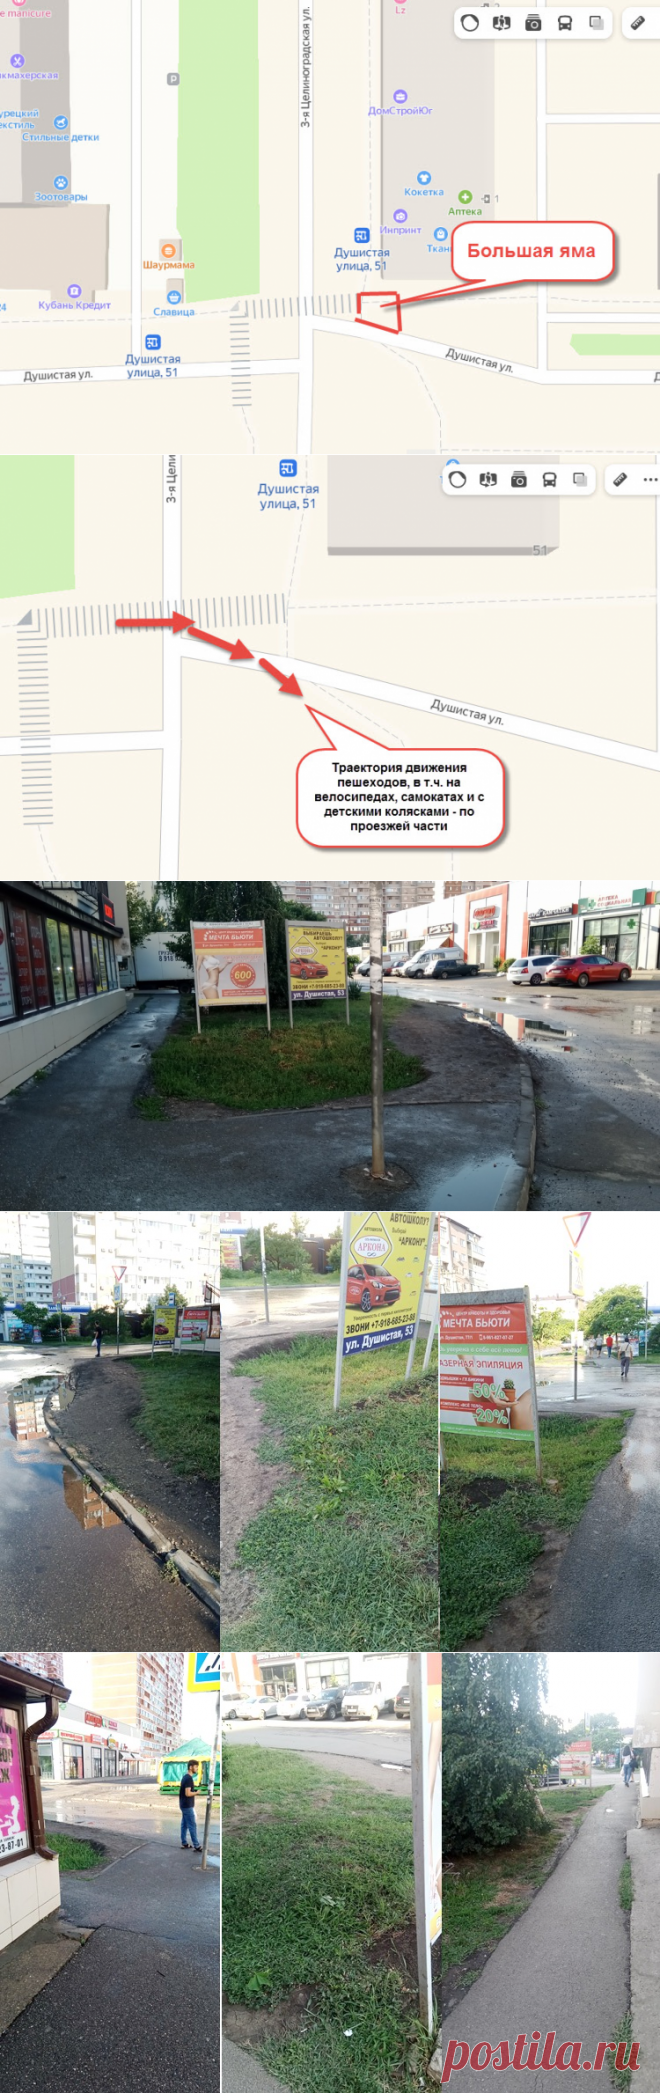 Администрацию Краснодара призвали благоустроить переход на пересечении улиц Душистой и 3-ей Целиноградской | Кубанские Вести